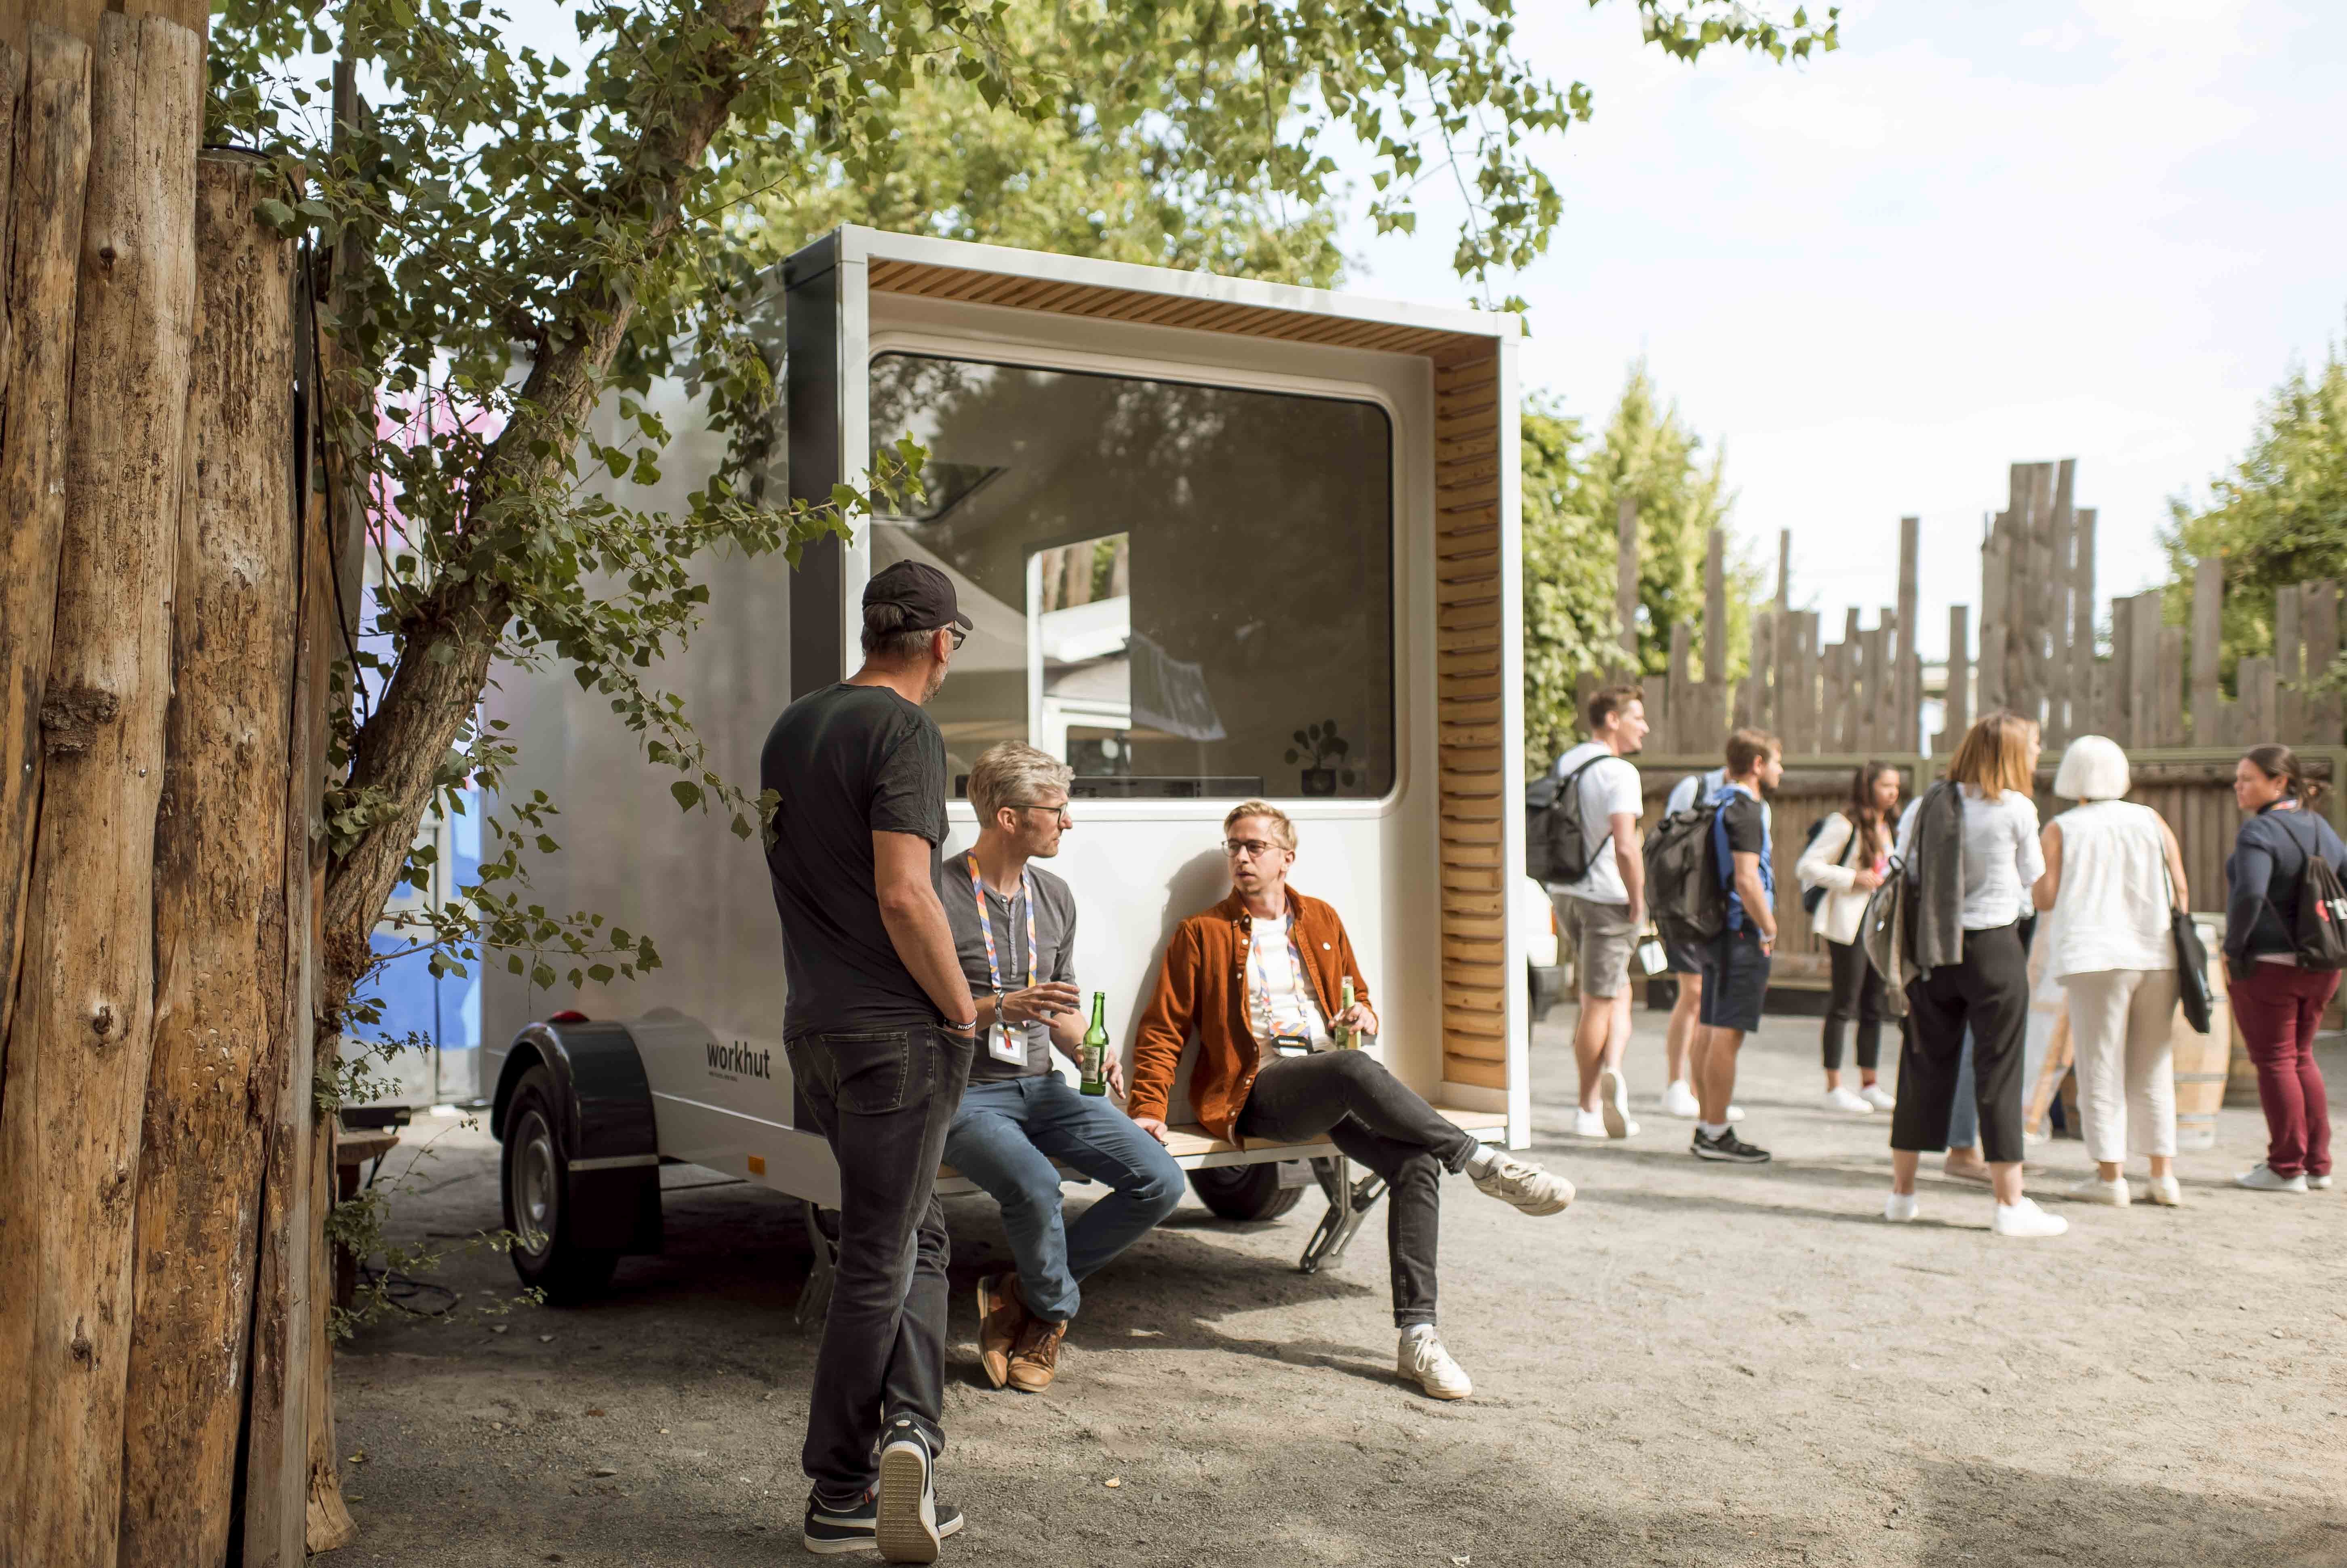 norrdesk stellen ihren Workhut Prototypen auf dem MACHN Festival 2022 vor